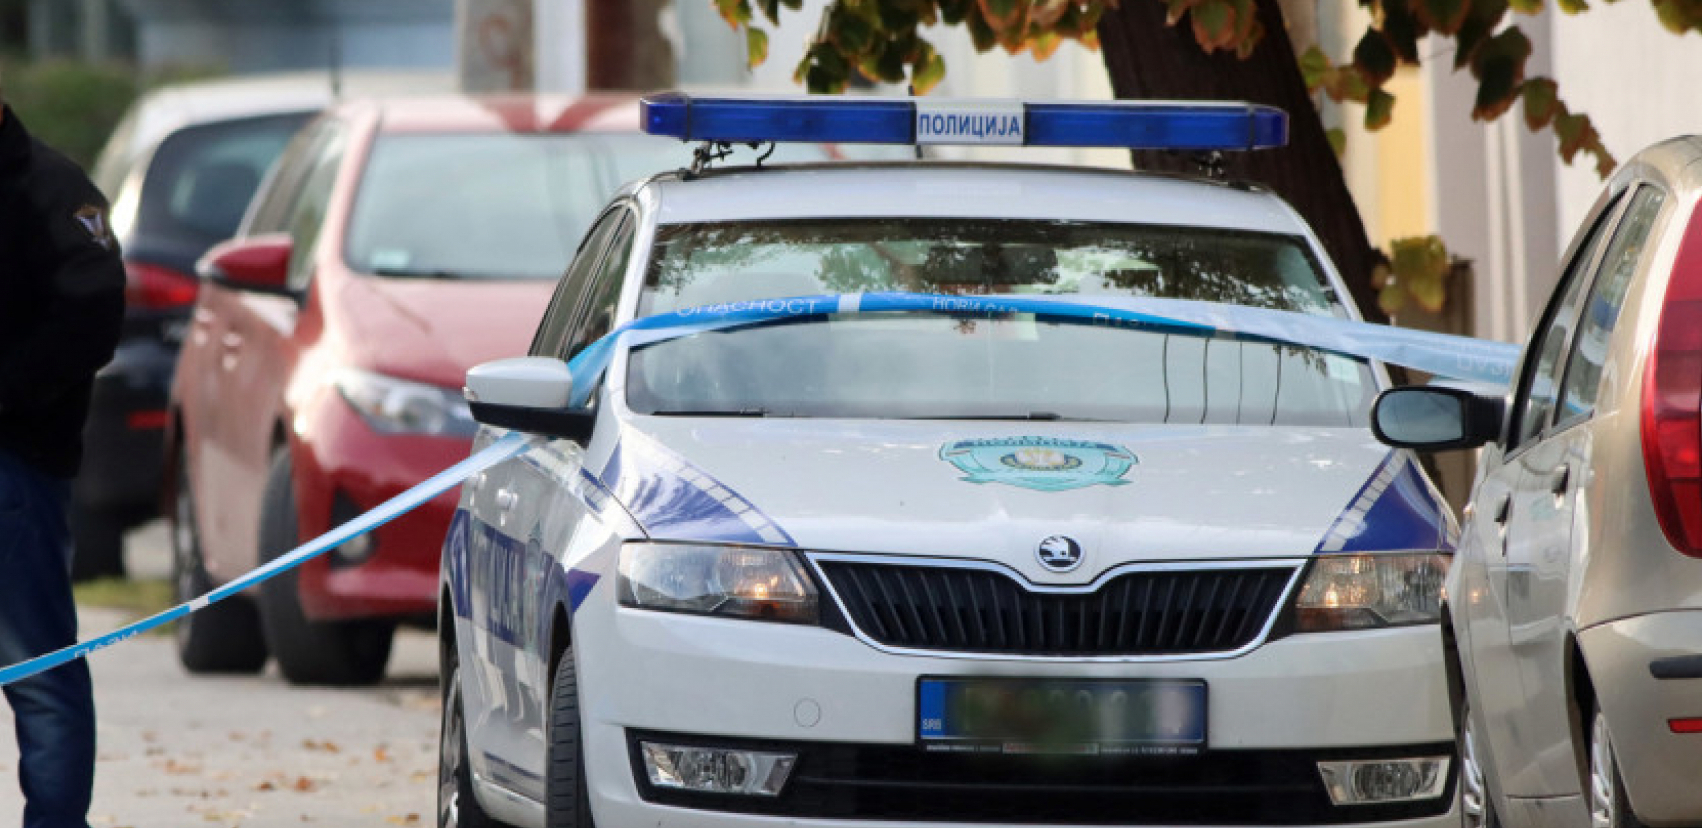 DVOJICU IZBO NOŽEM, DEVOJKU UDARIO PESNICOM?! U Kragujevcu dečak (16) uhapšen zbog pokušaja ubistva